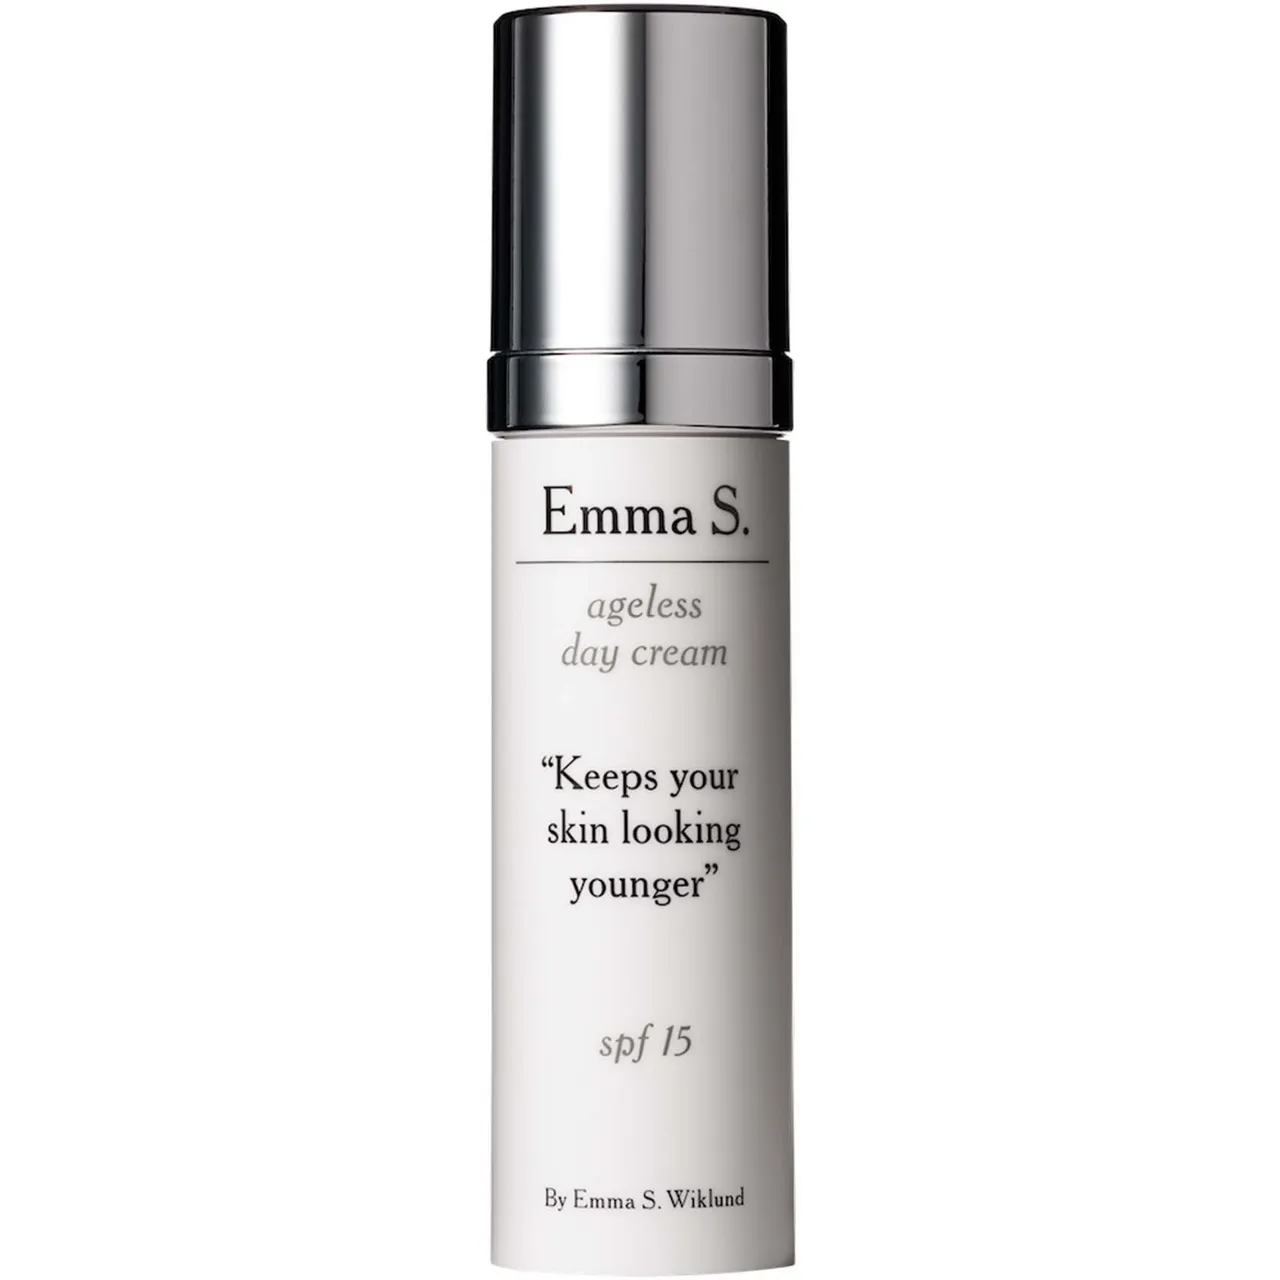 Emma S. Ageless Day Cream 50 ml - Preise vergleichen